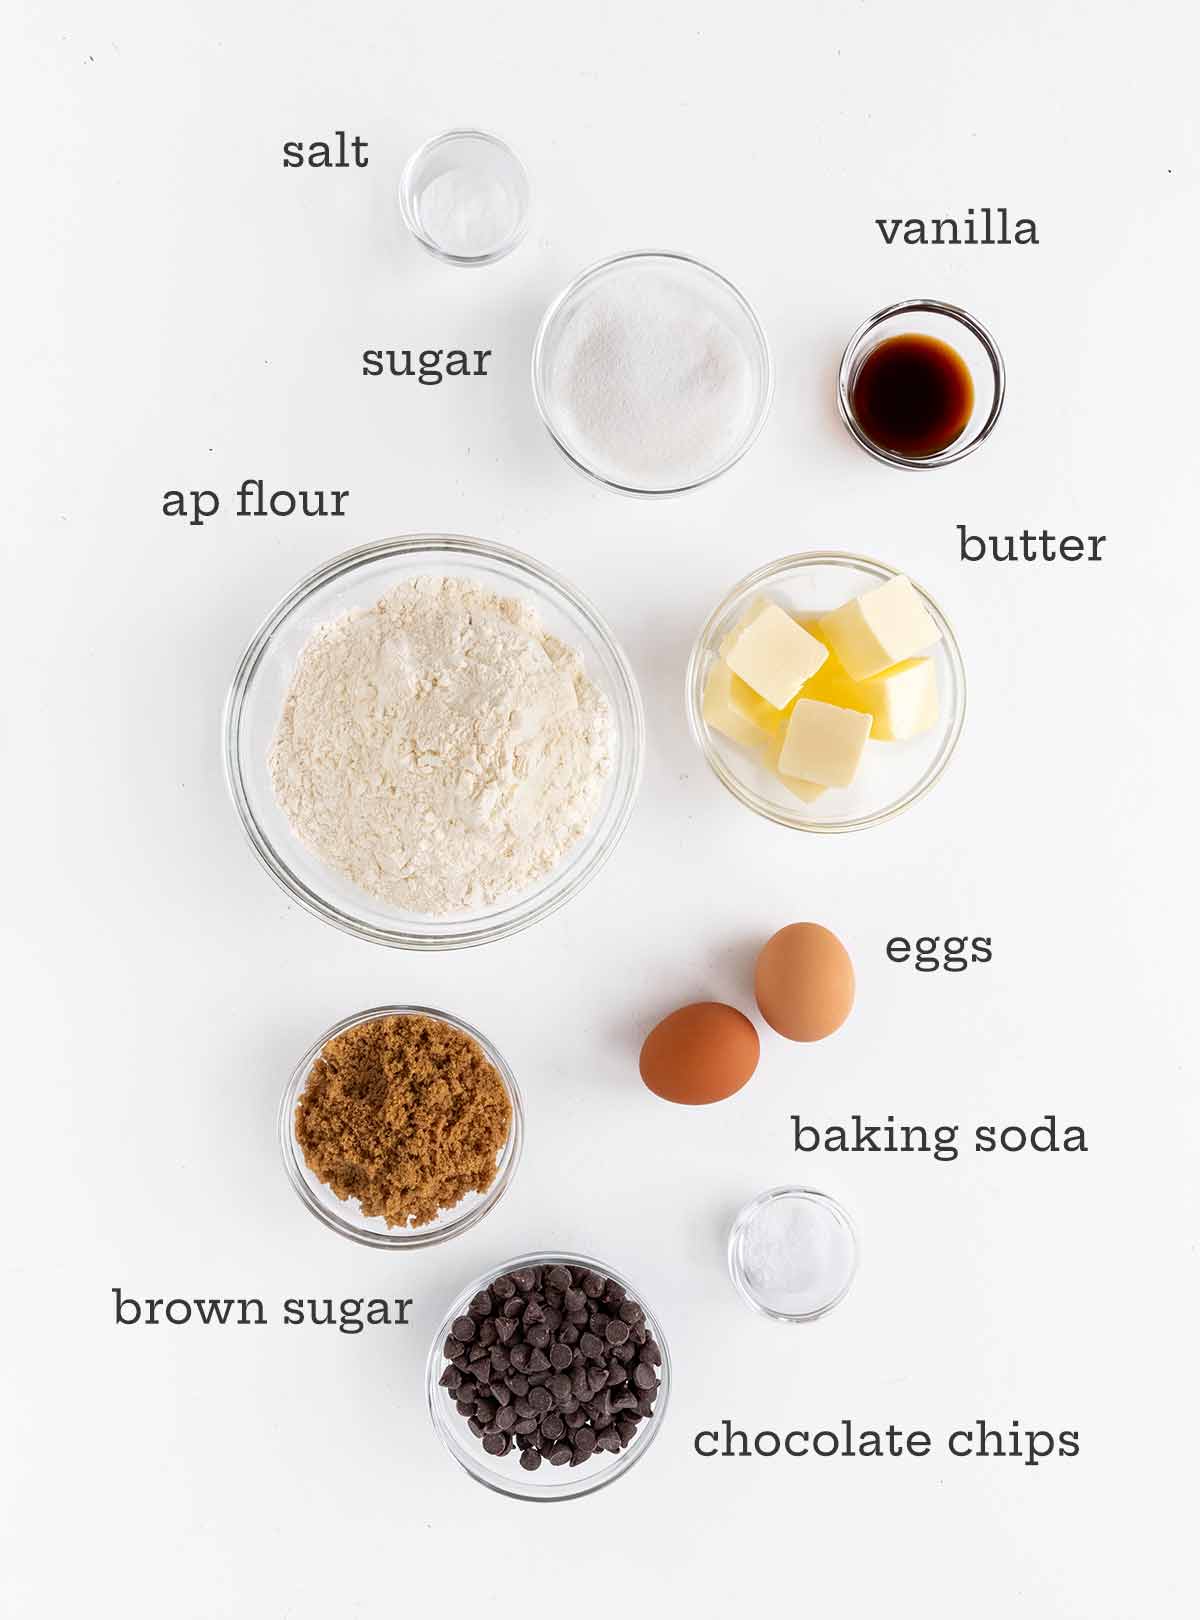 Ingredienser för mjuka chokladkakor - mjöl, smör, ägg, socker, vanilj, salt, bakpulver och chokladchips.